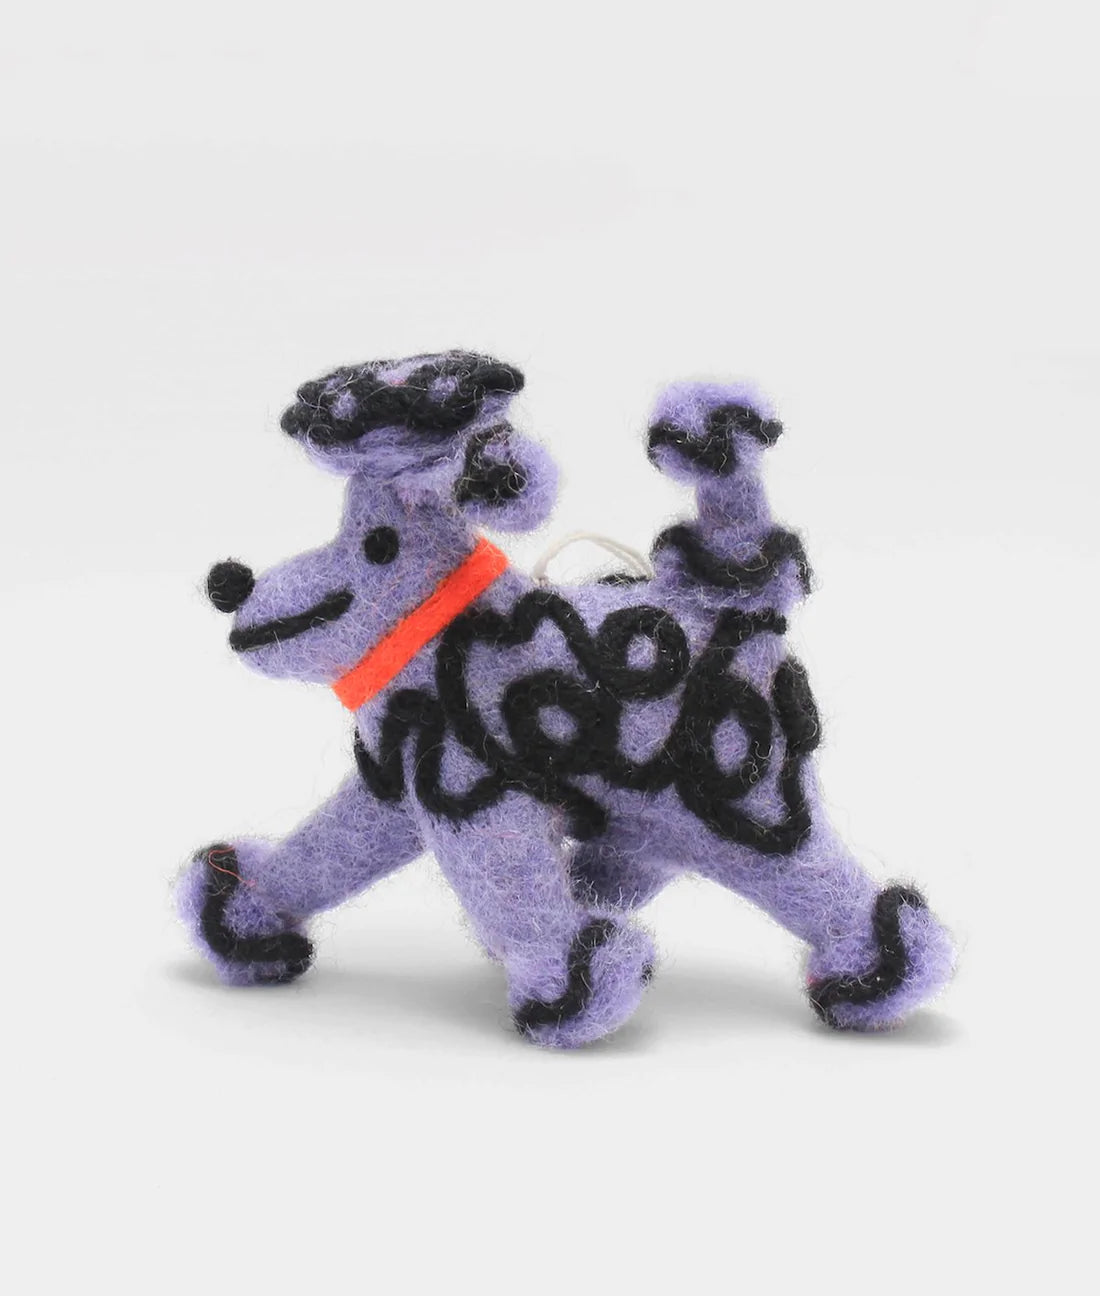 Bauble - Fleur, the purple poodle